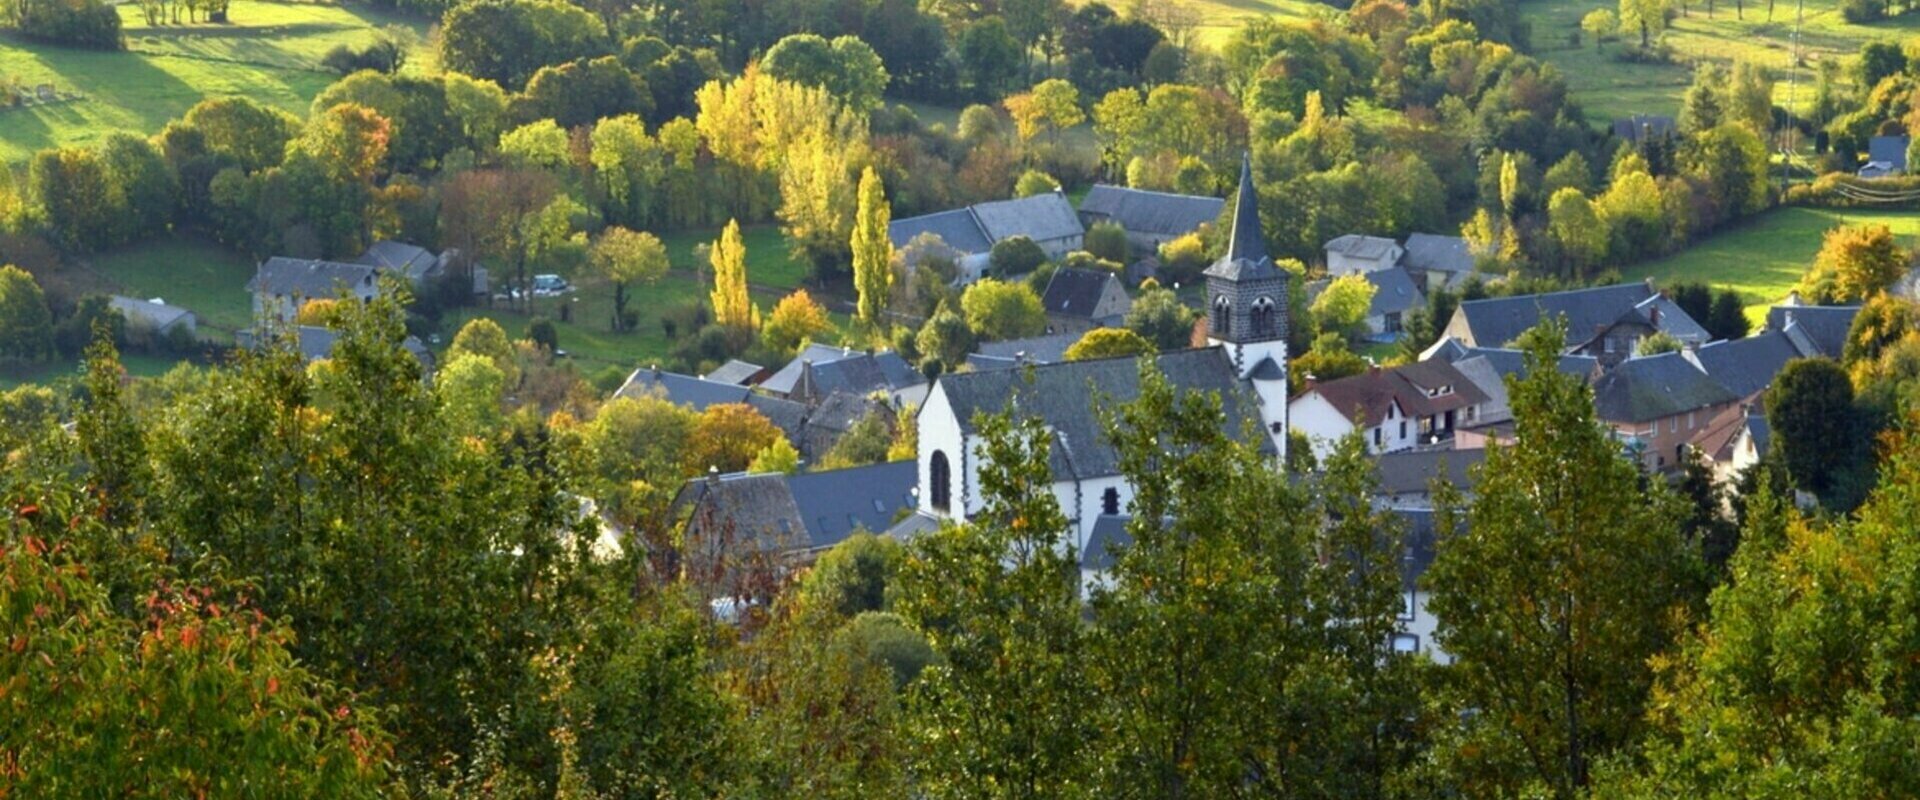 Bienvenue à Saint Bonnet Prés Orcival dans le Puy de Dôme Auvergne